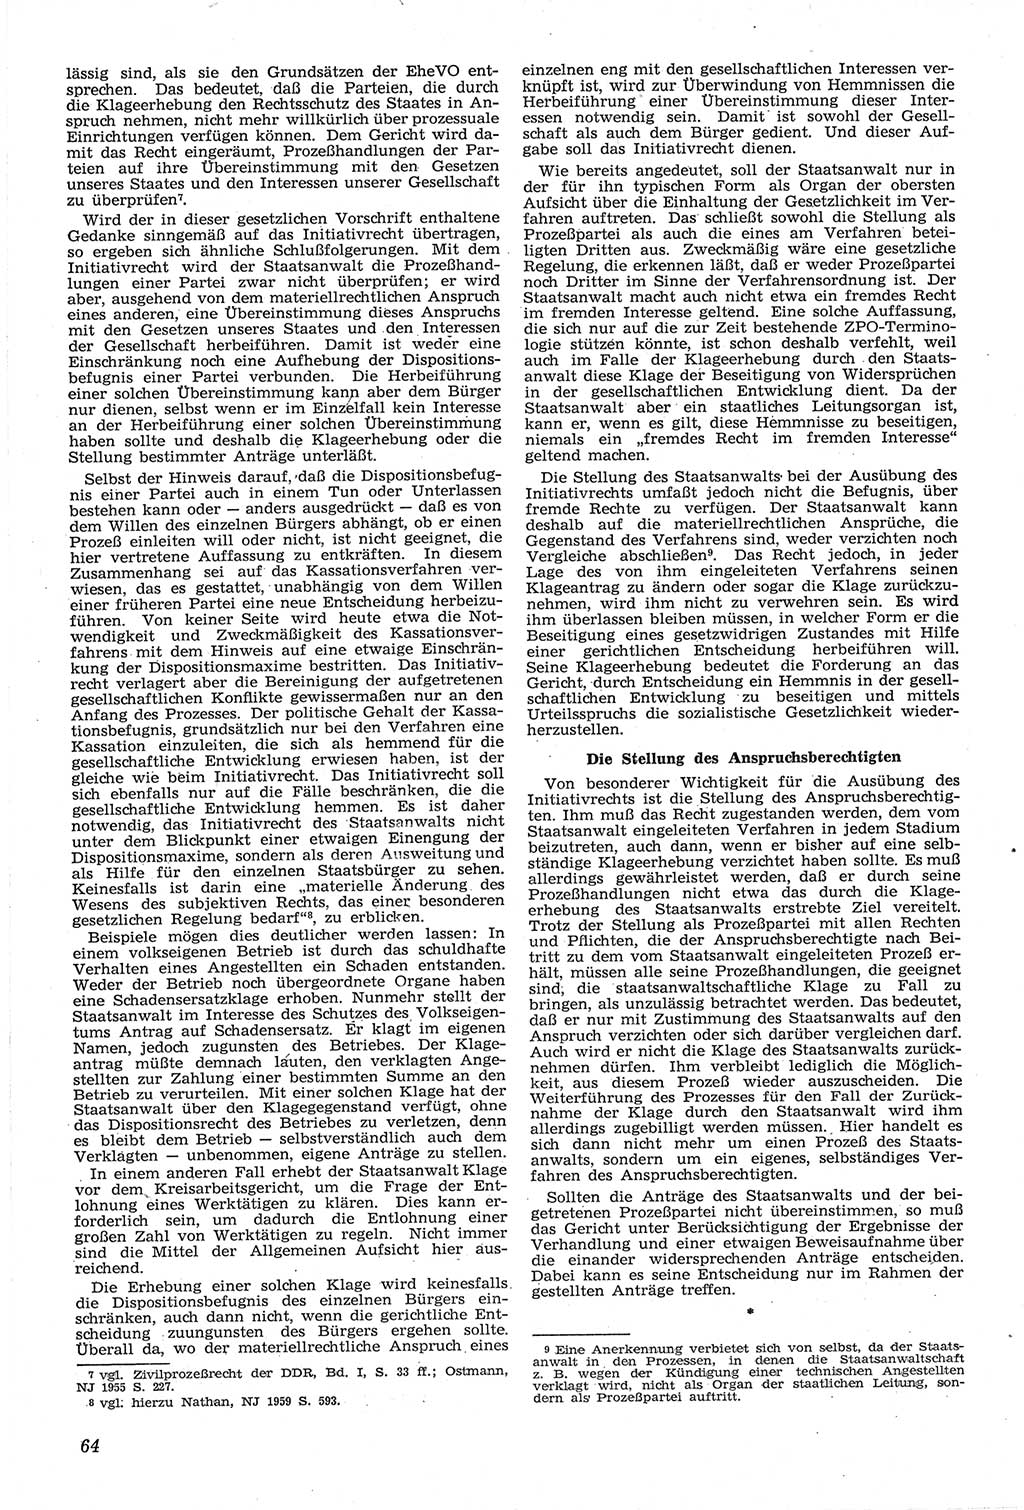 Neue Justiz (NJ), Zeitschrift für Recht und Rechtswissenschaft [Deutsche Demokratische Republik (DDR)], 14. Jahrgang 1960, Seite 64 (NJ DDR 1960, S. 64)